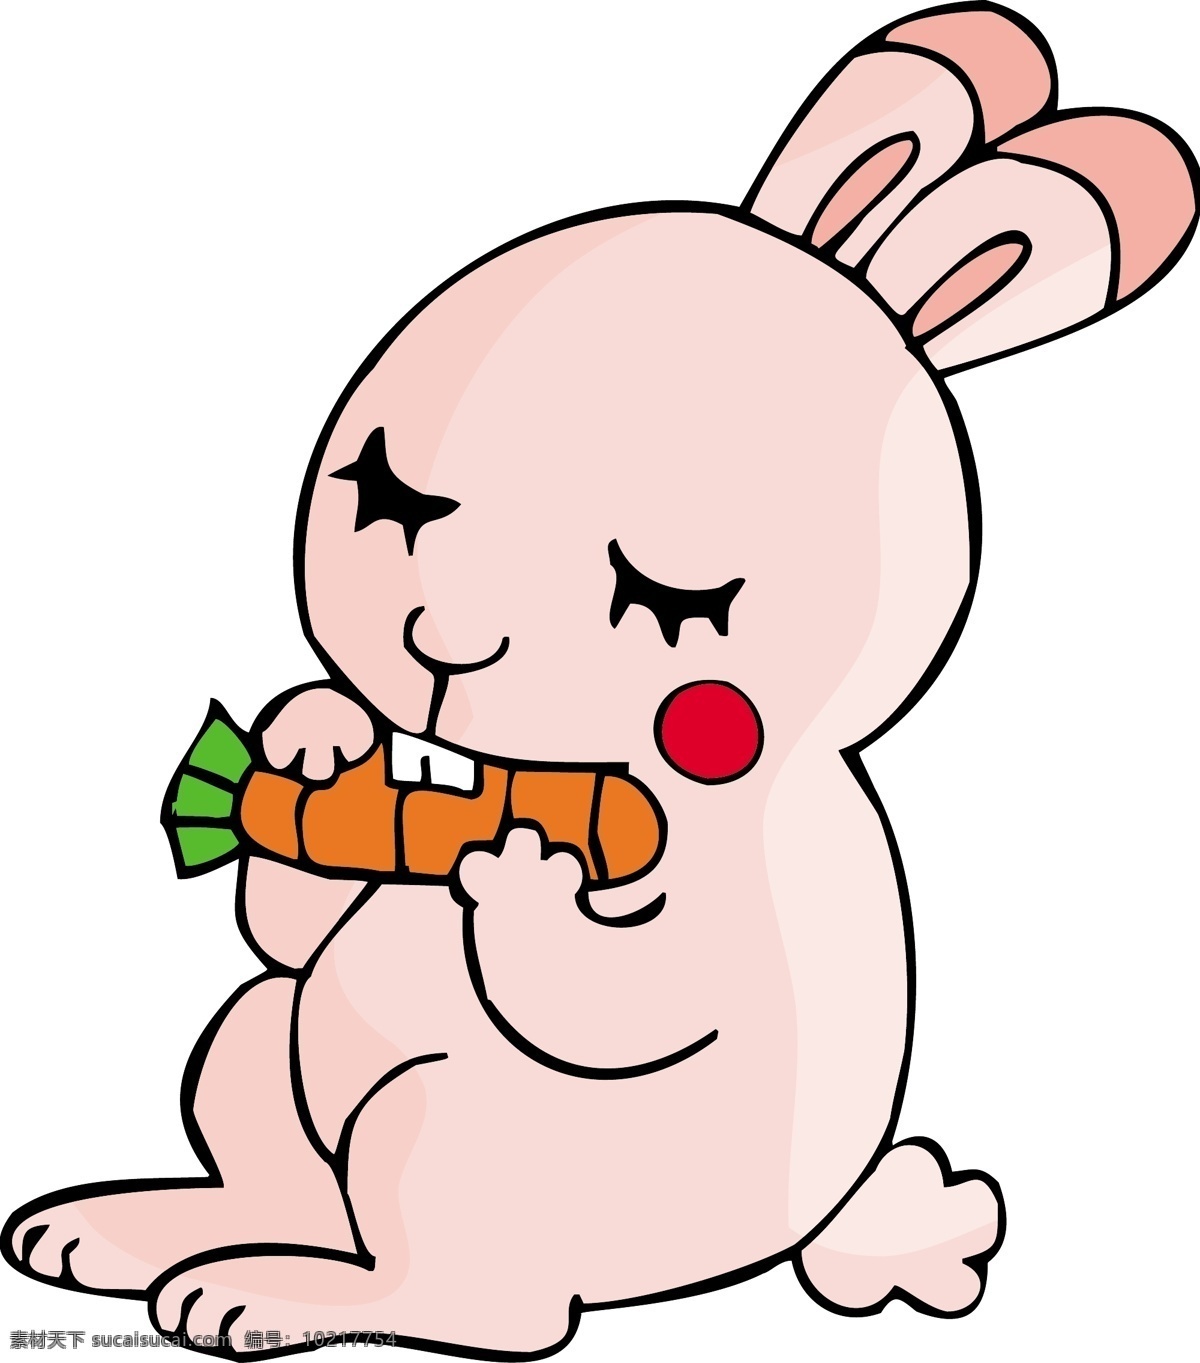 卡通 矢量 兔子 吃 萝卜 卡通矢量 粉红兔子 动漫动画